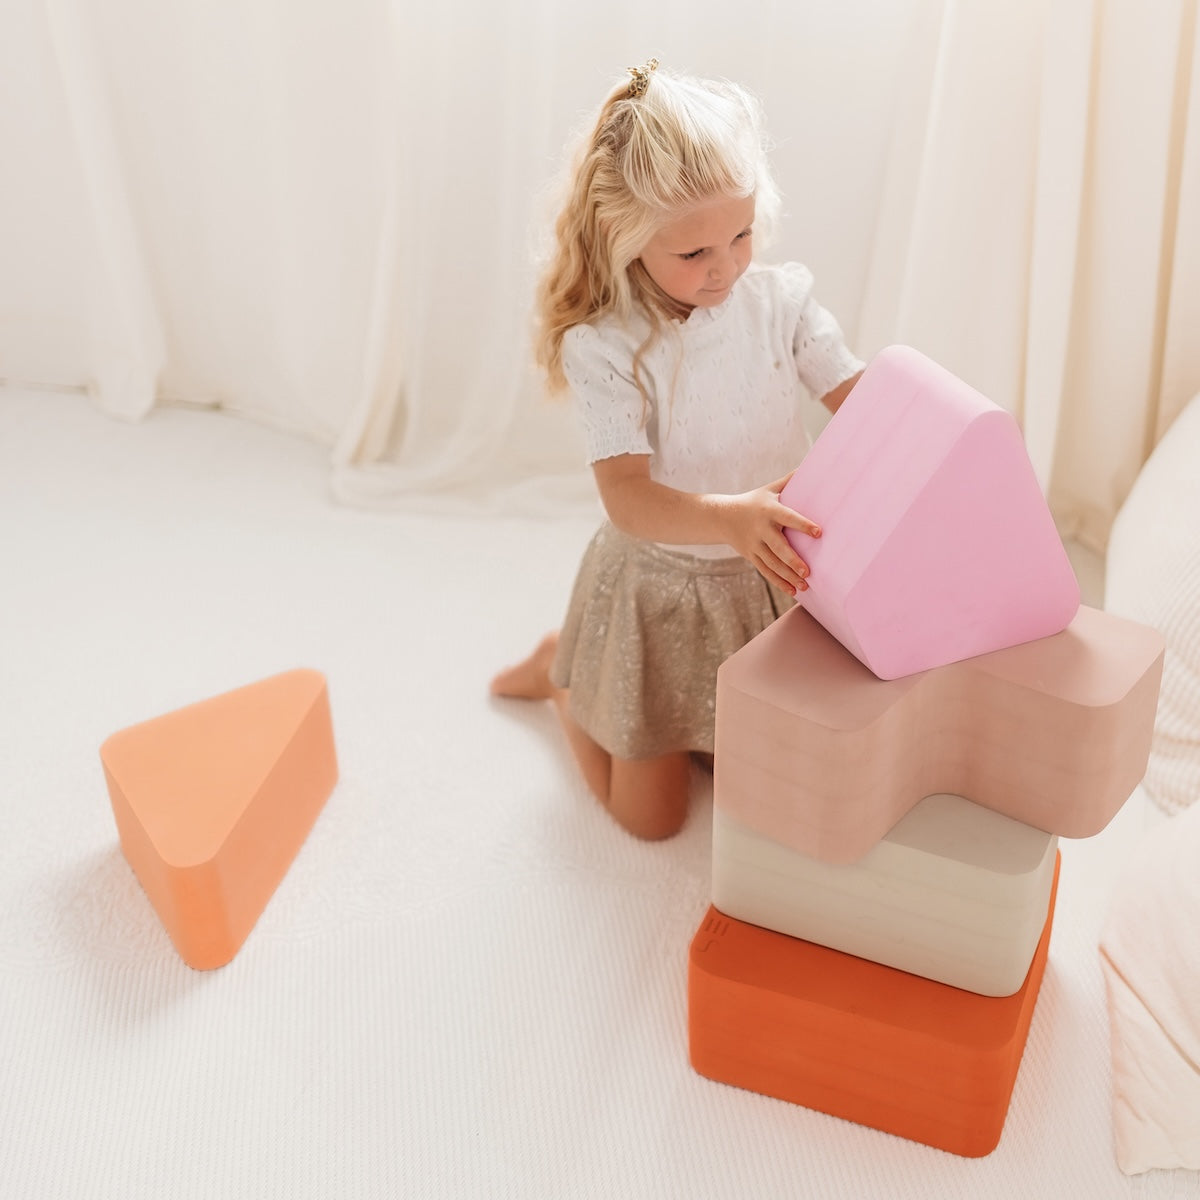 Met het Moes Play triangle earth speelblok leert je kindje creatief spelen en wordt de motoriek op een originele manier gestimuleerd. Het speelblok is multifunctioneel en kan op verschillende manieren worden gebruikt om mee te spelen. VanZus